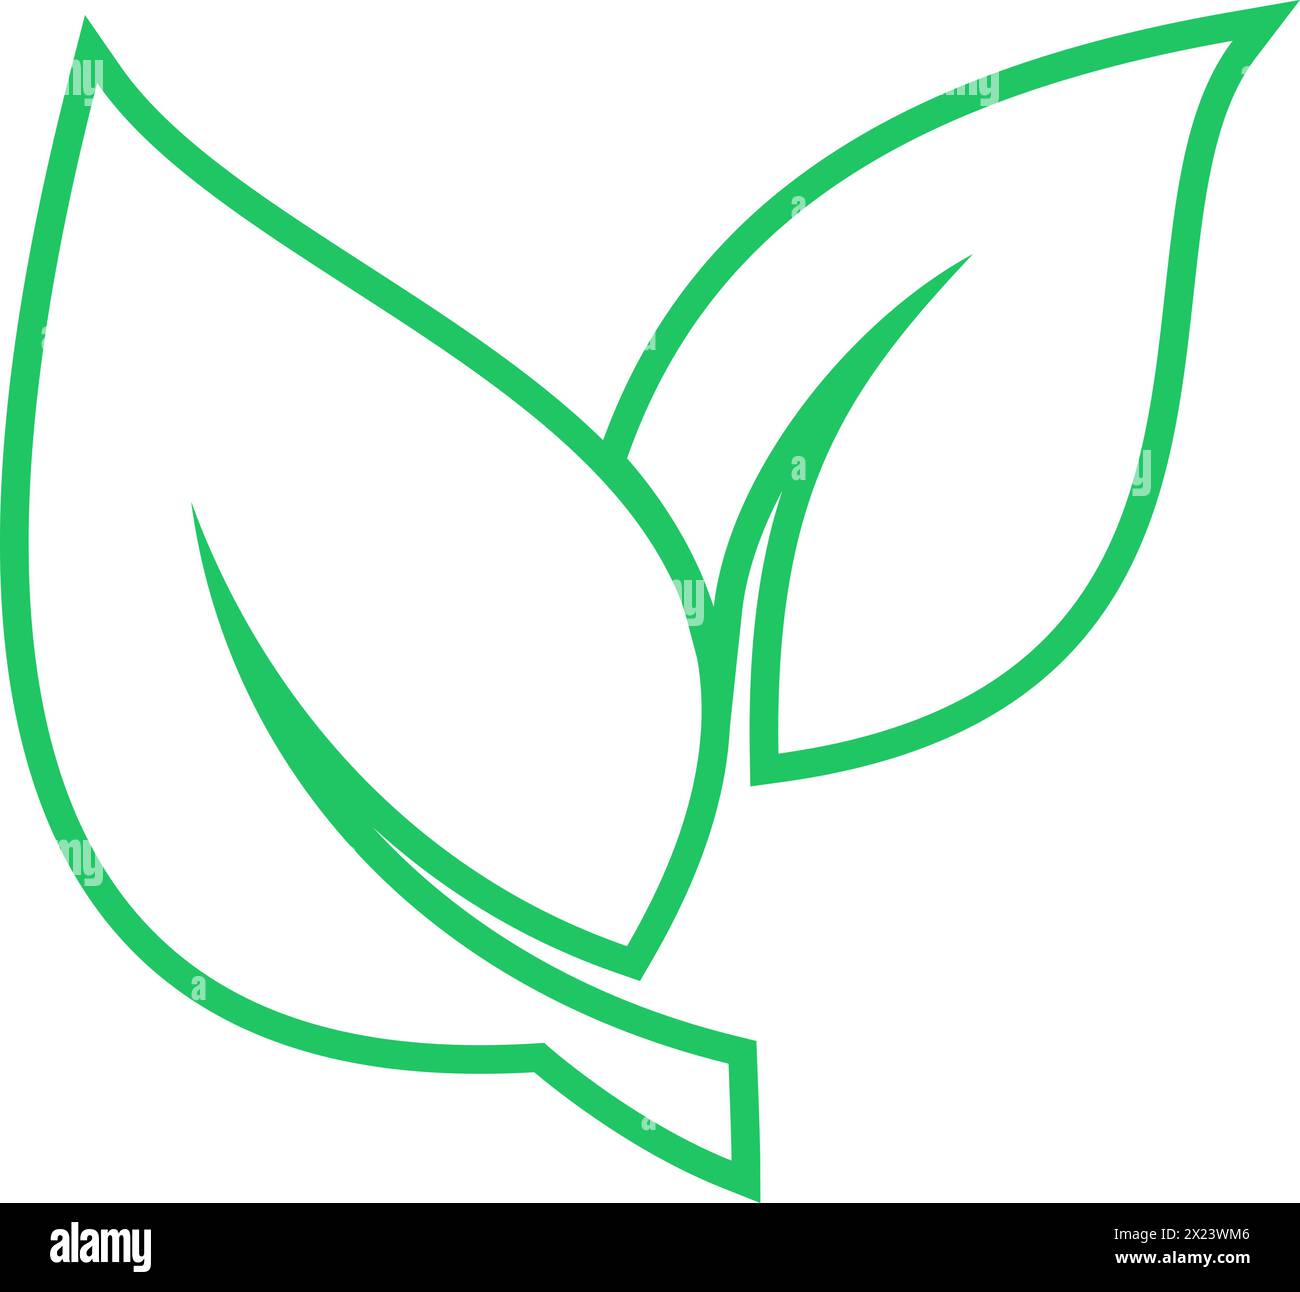 Icona lineare a foglie verdi come simbolo della strategia di protezione ambientale Illustrazione Vettoriale